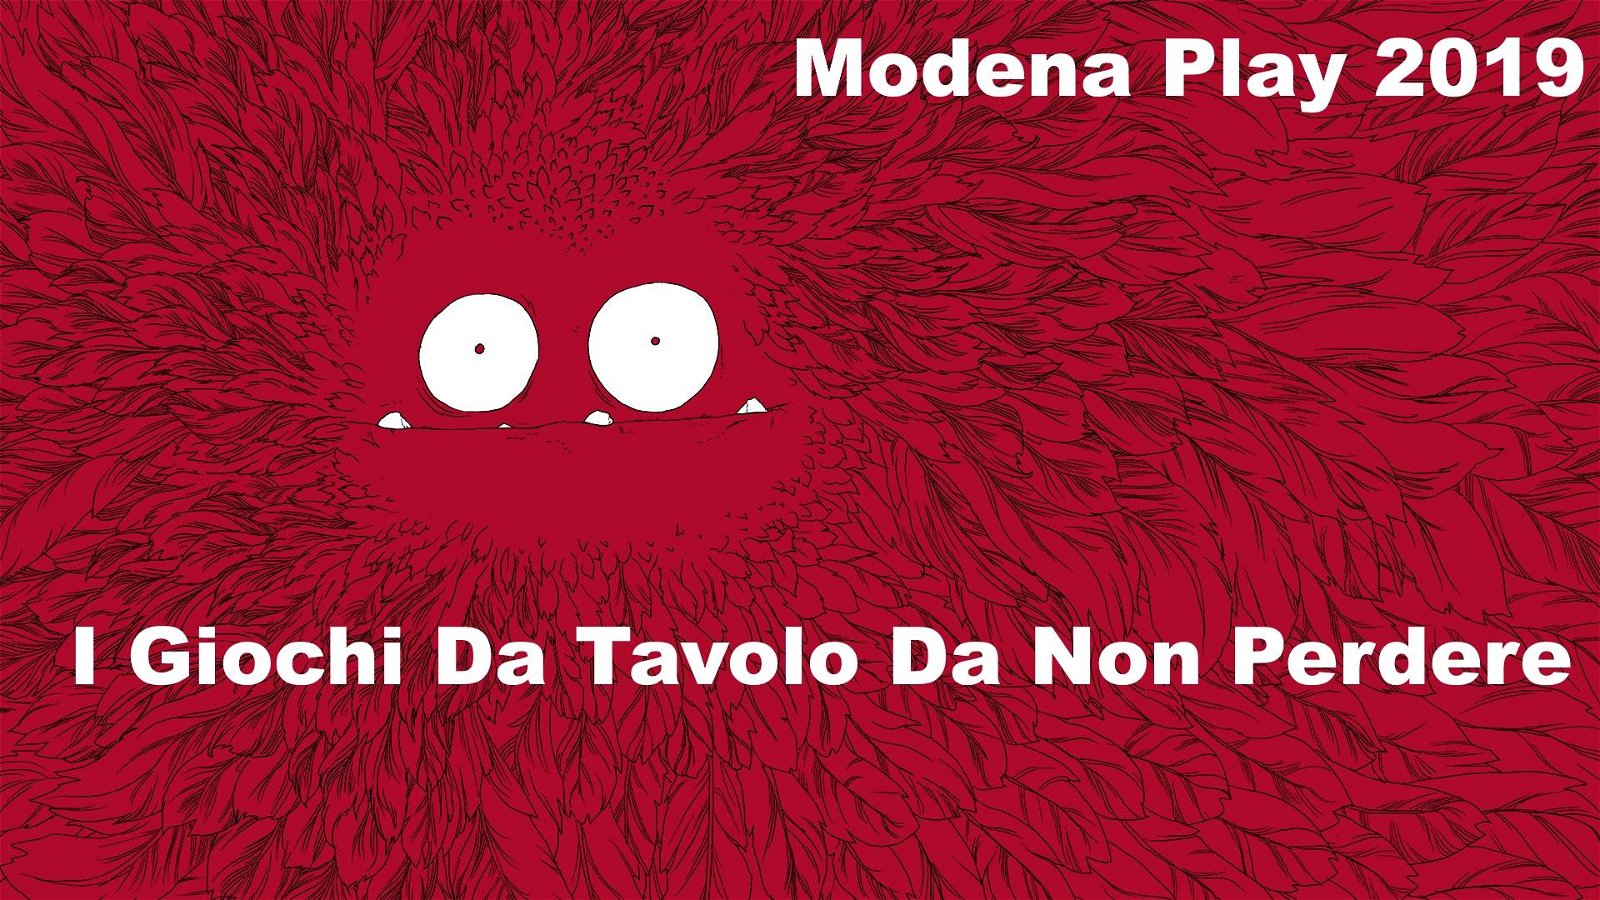 Immagine di Modena Play 2019, I giochi da tavolo da non perdere